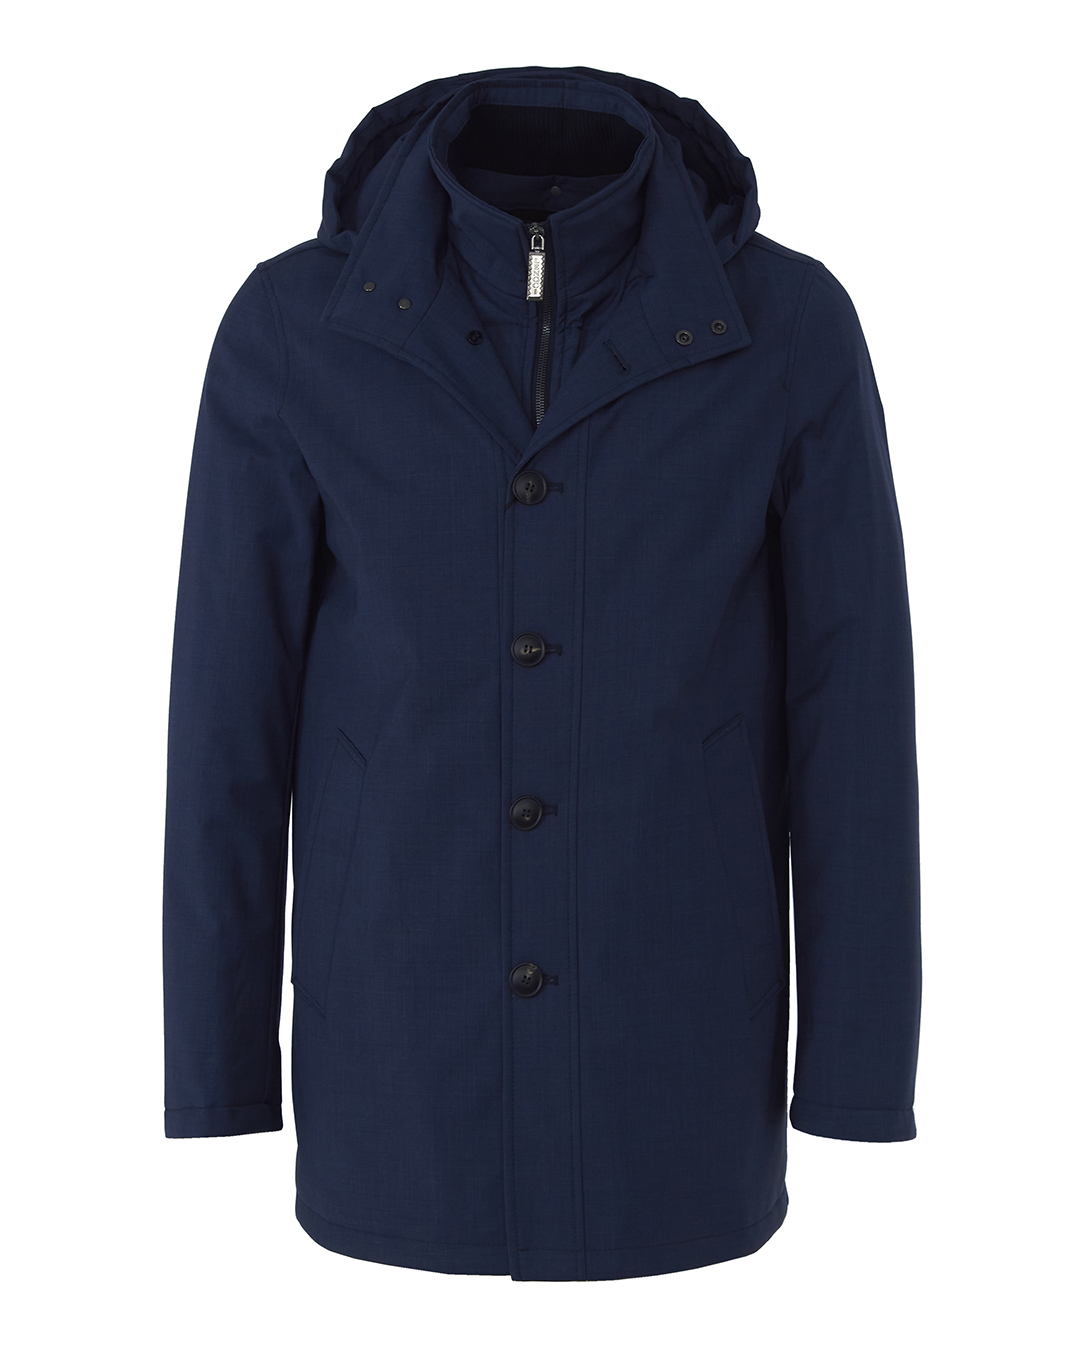 Пальто мужское LENOCI M30L80-202 синее 48